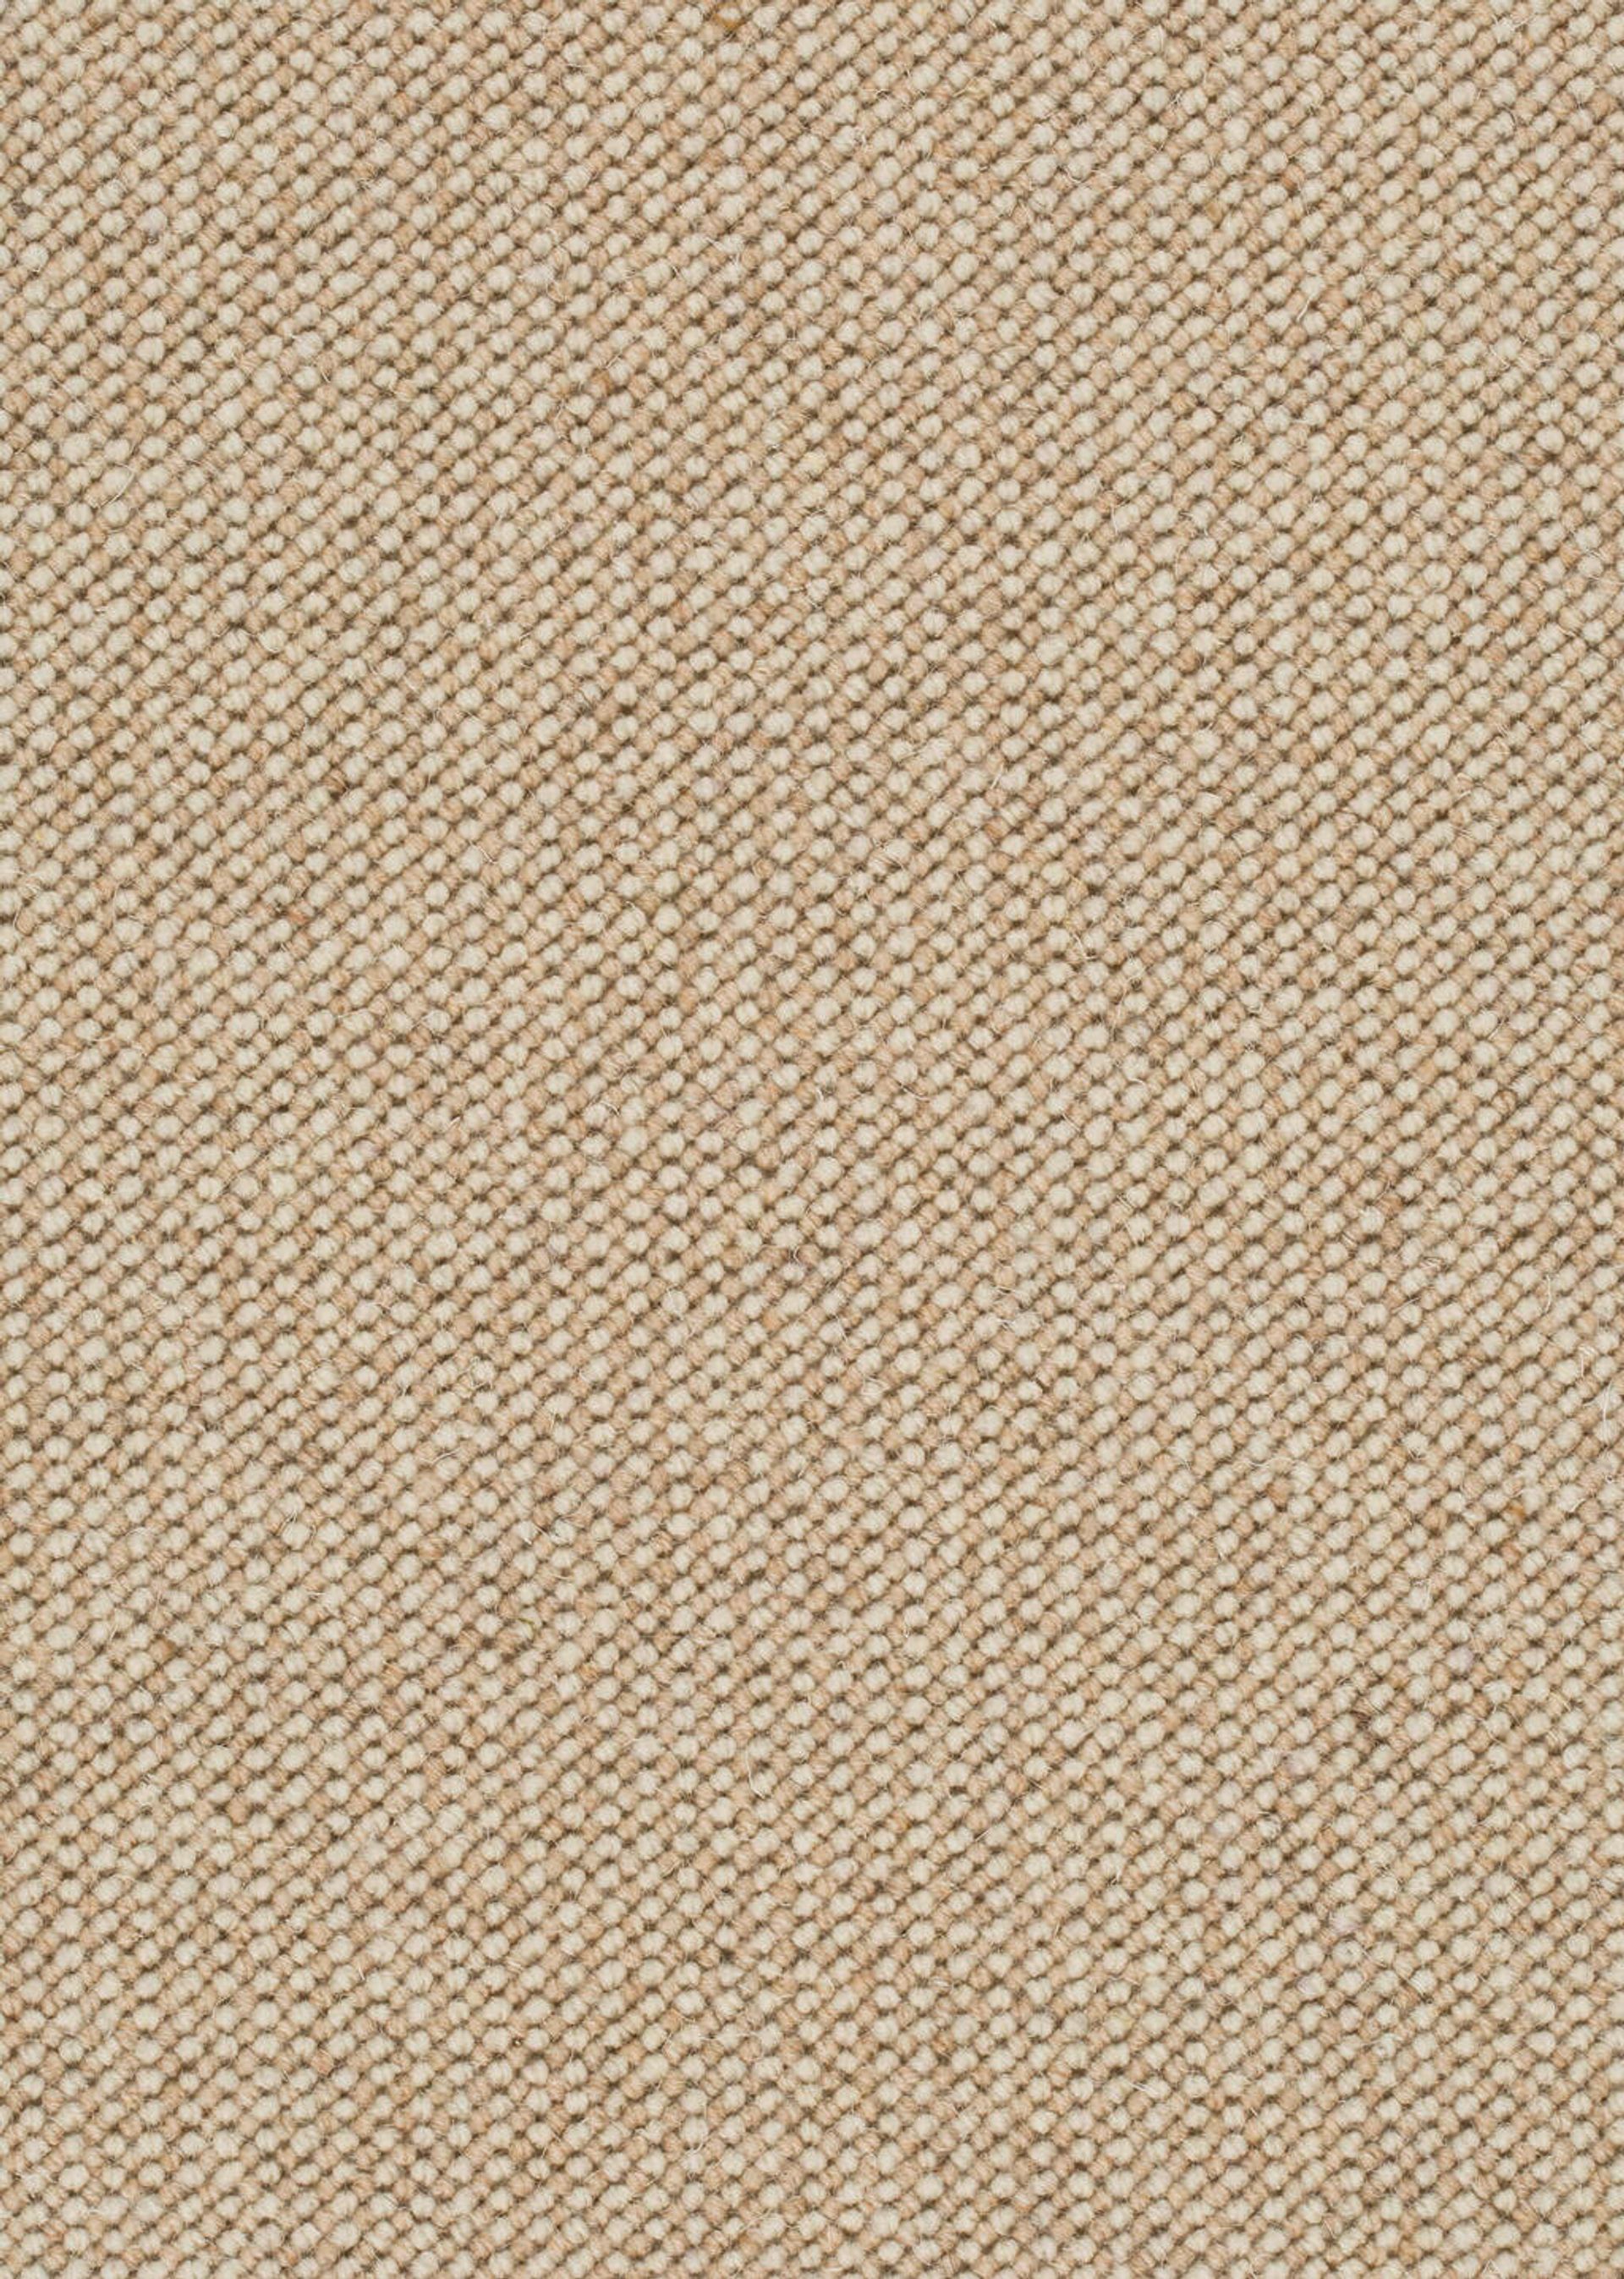 Teppichboden Schurwolle Ohio Farbe 212 Rollenbreite: 400 cm